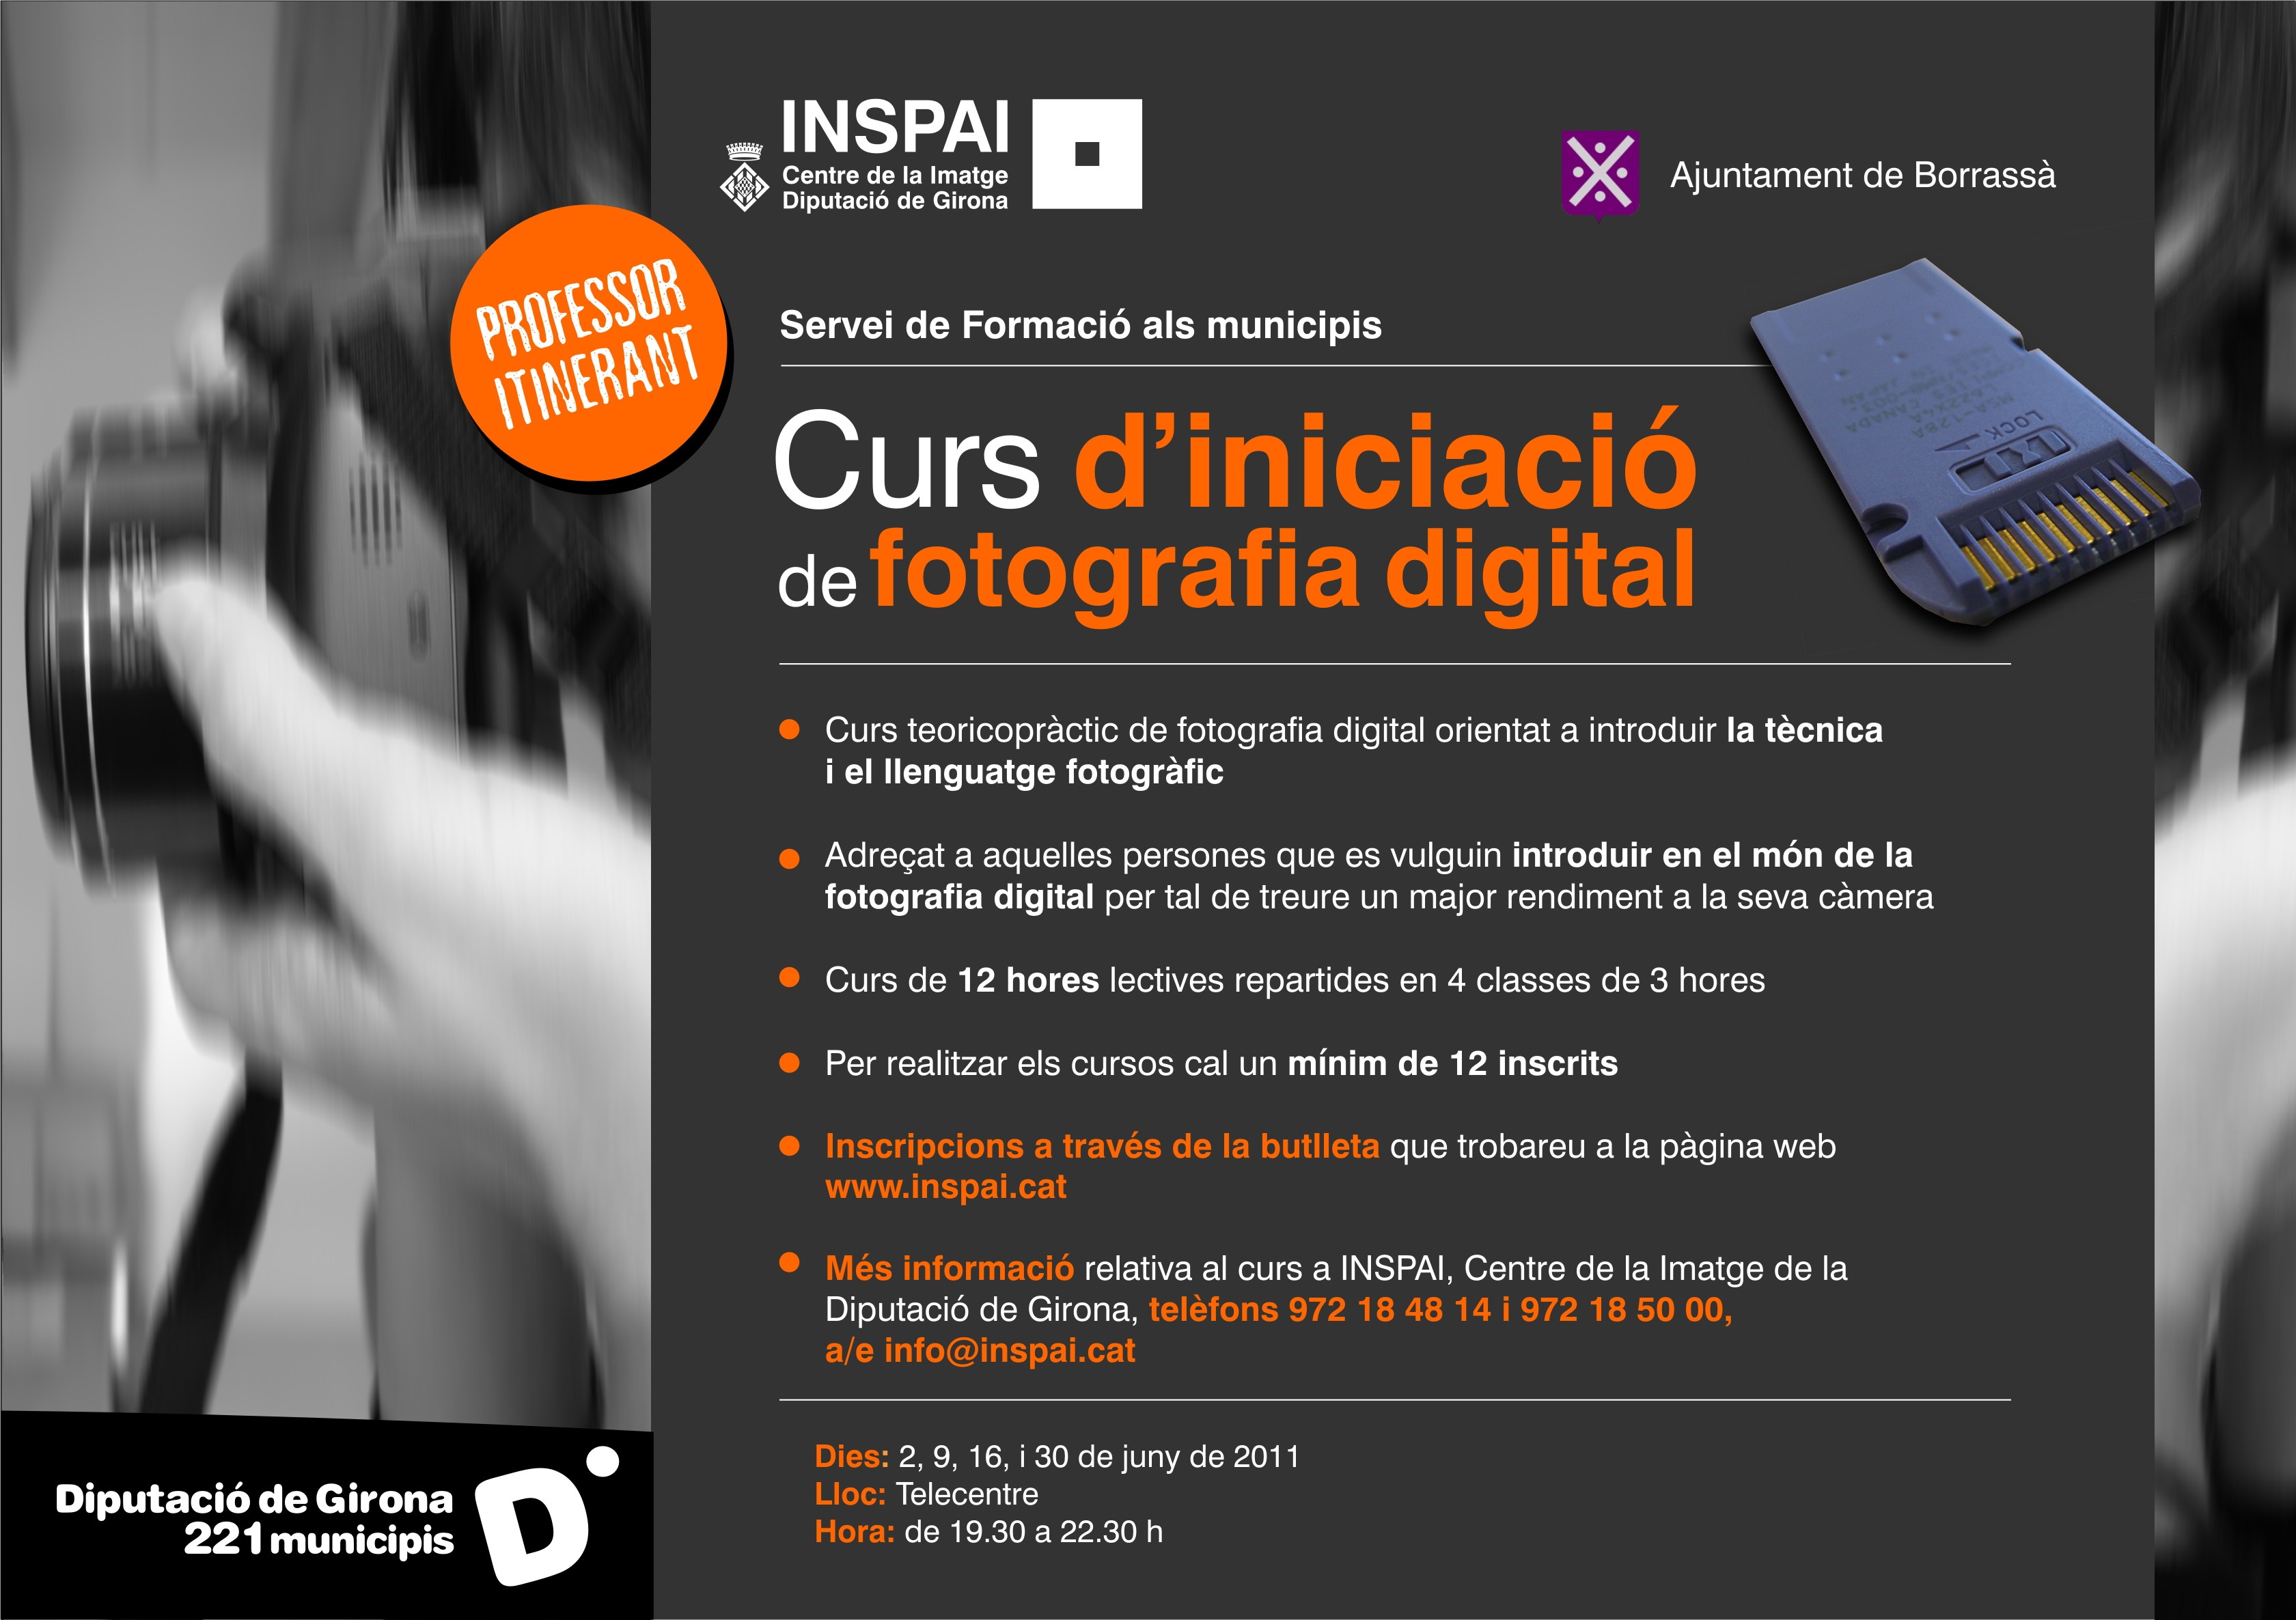 El proper mes de juny, Borrassà acollirà un Curs d'iniciació de fotografia digital. Cal inscriure's al web www.inspai.cat.